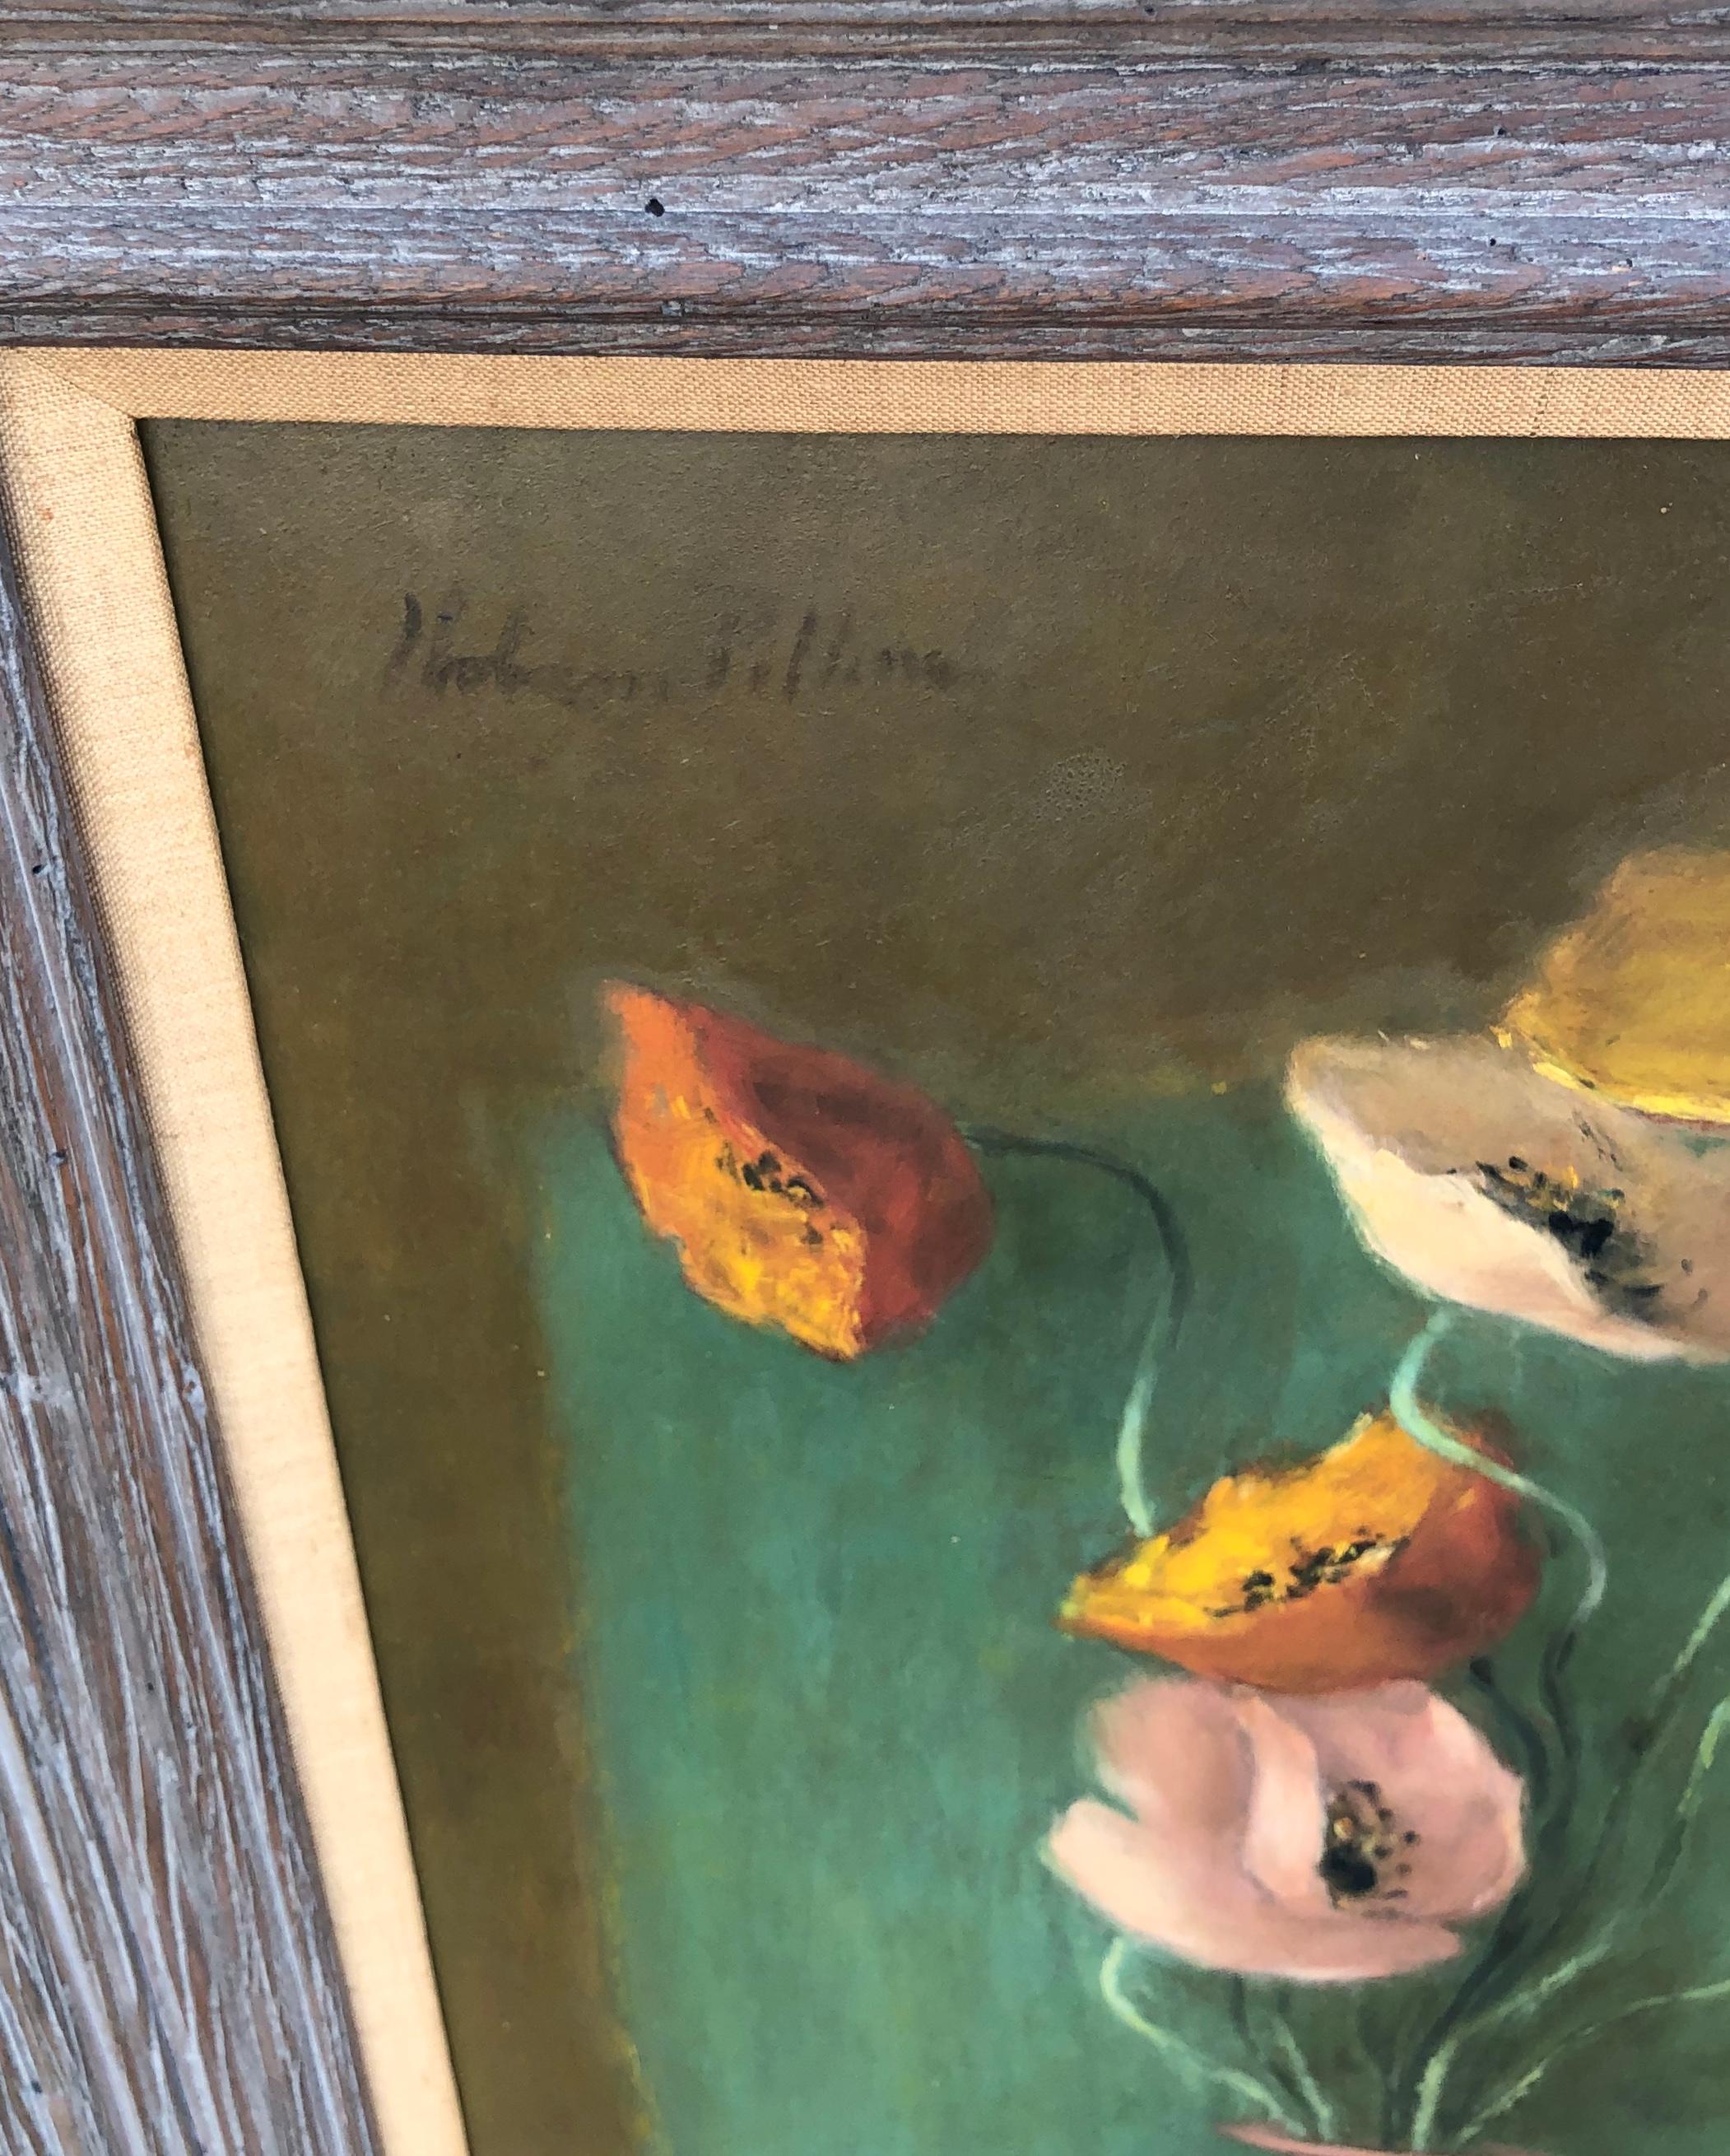 Hobson Pittman (1899-1972)
Signiert oben links. Öl auf Platte.
Provenienz: Boca Raton Museum of Art
Viele Beispiele von Pittmans Gemälden befinden sich in zahlreichen Museumssammlungen, unter anderem im Met in New York. Maße 25,5